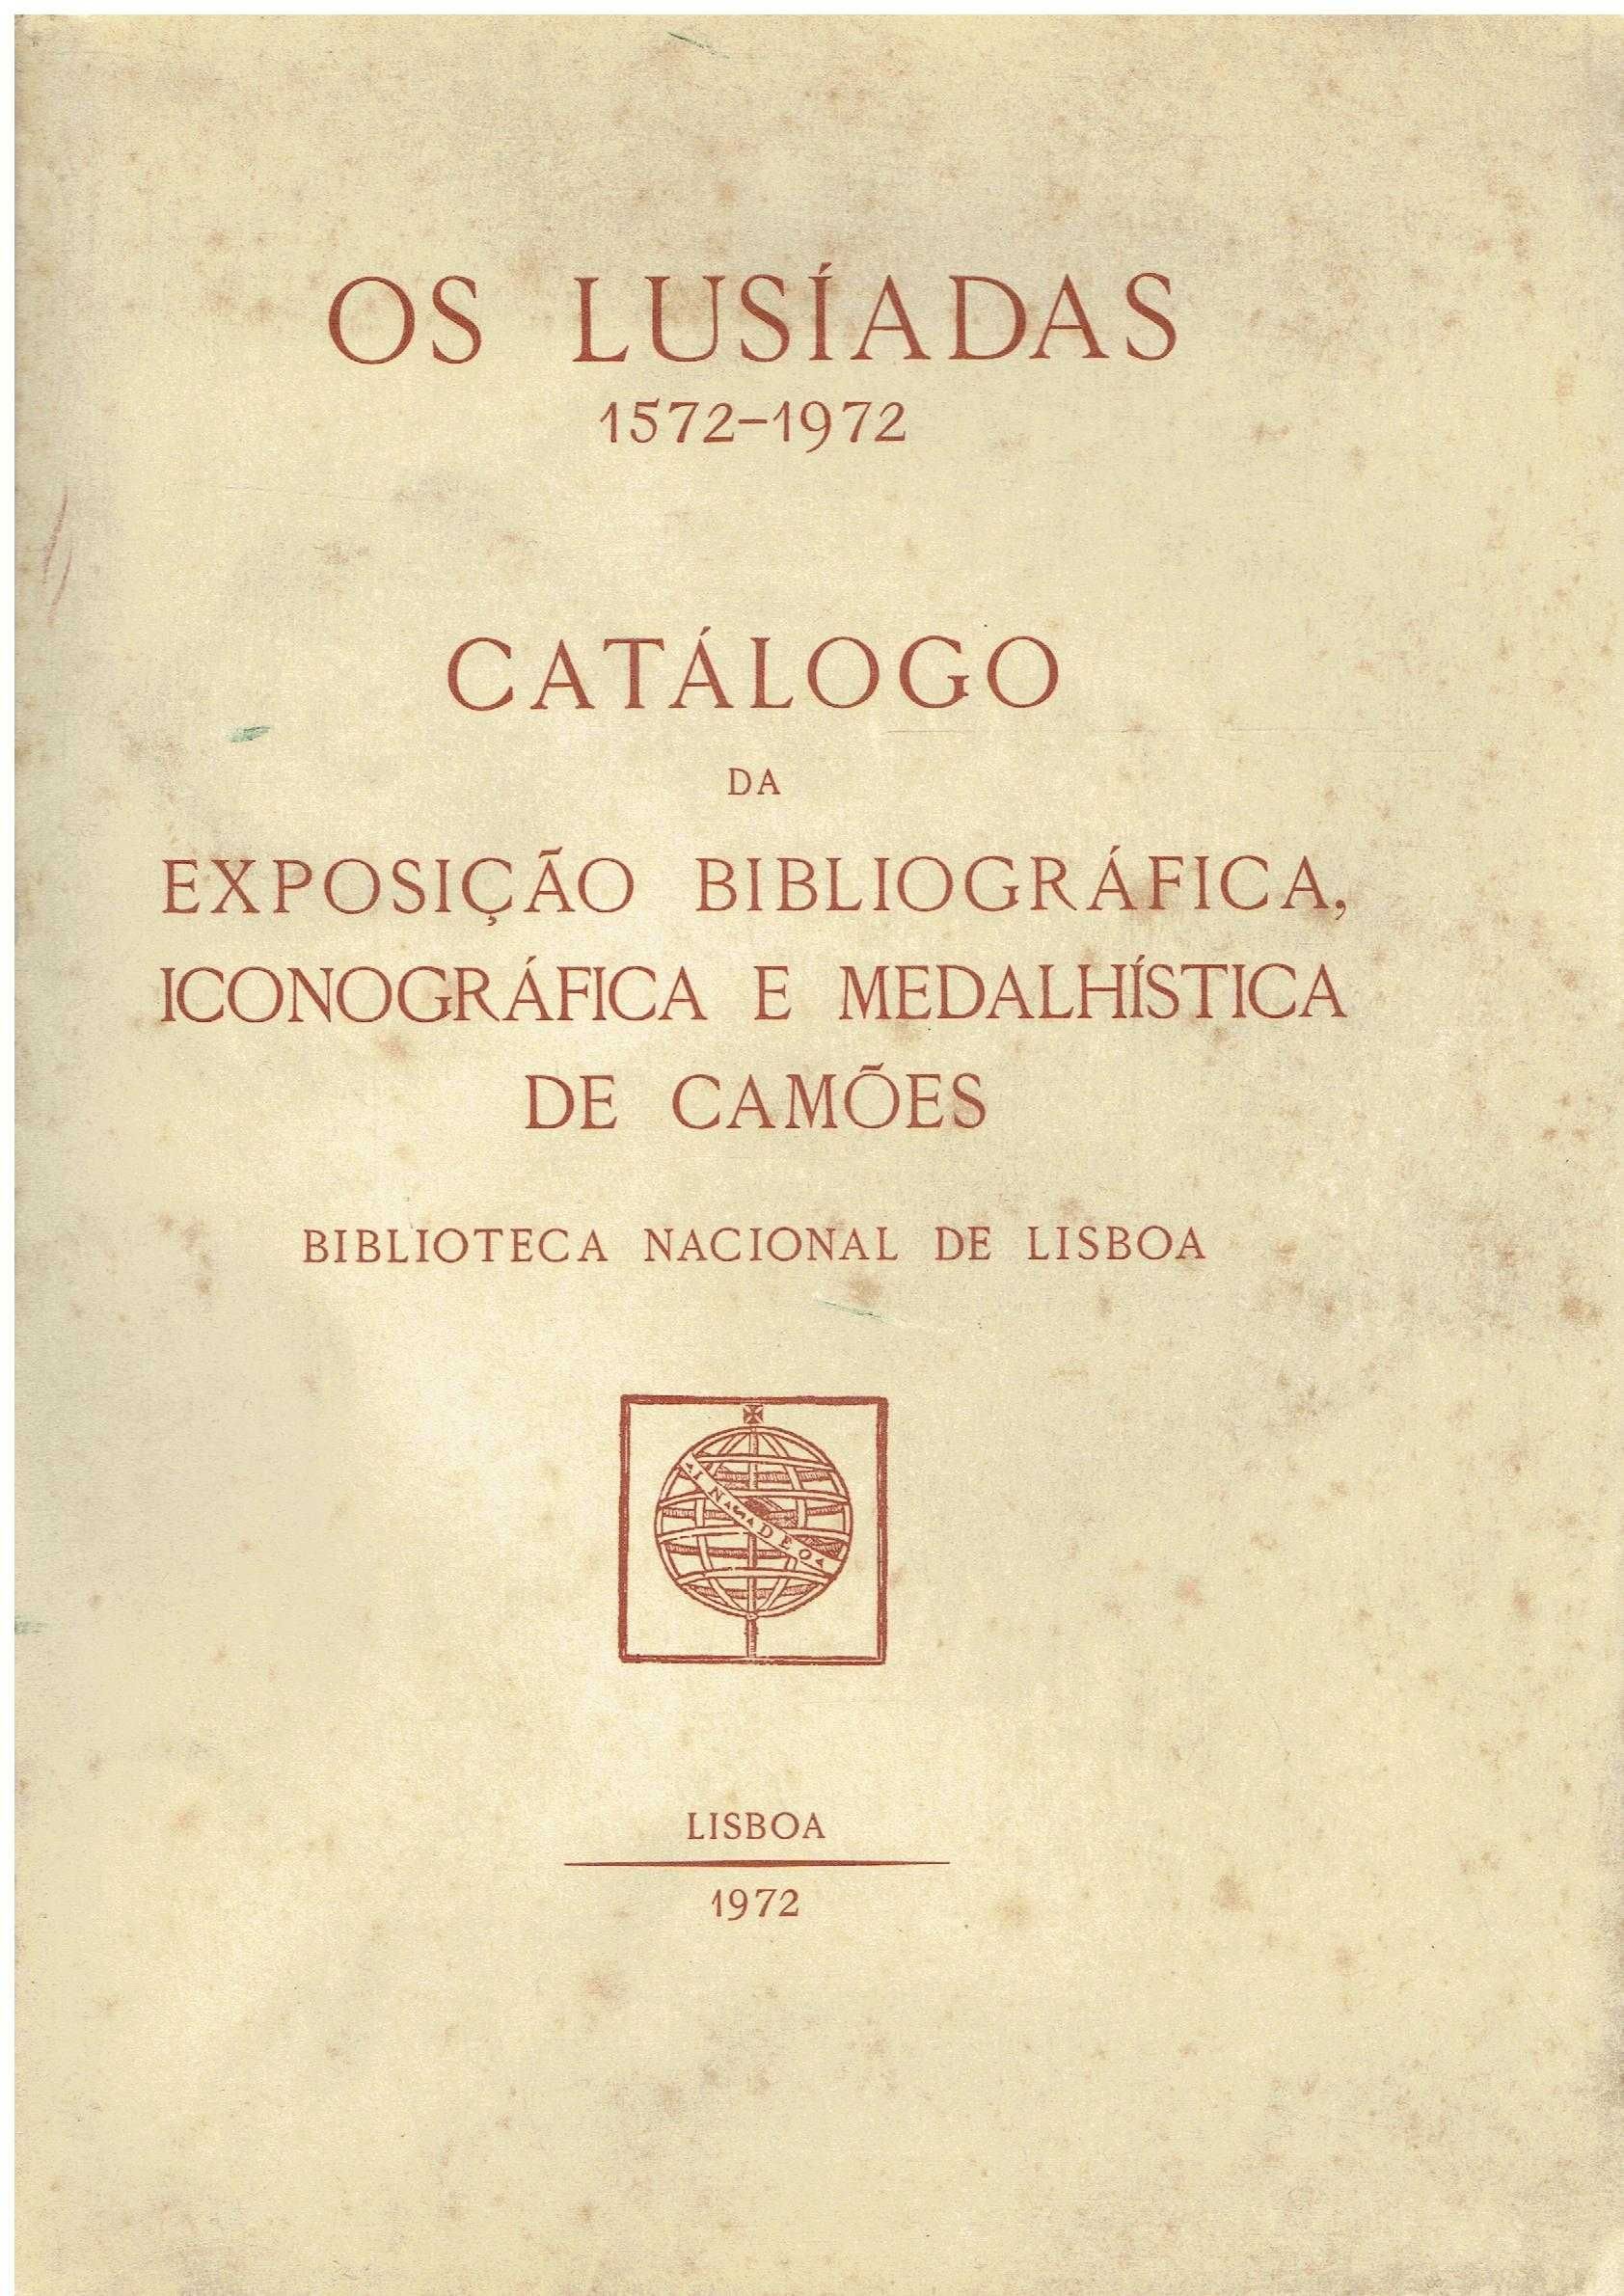 11127
Os Lusíadas 1572/1972 : catálogo  - I Vol.